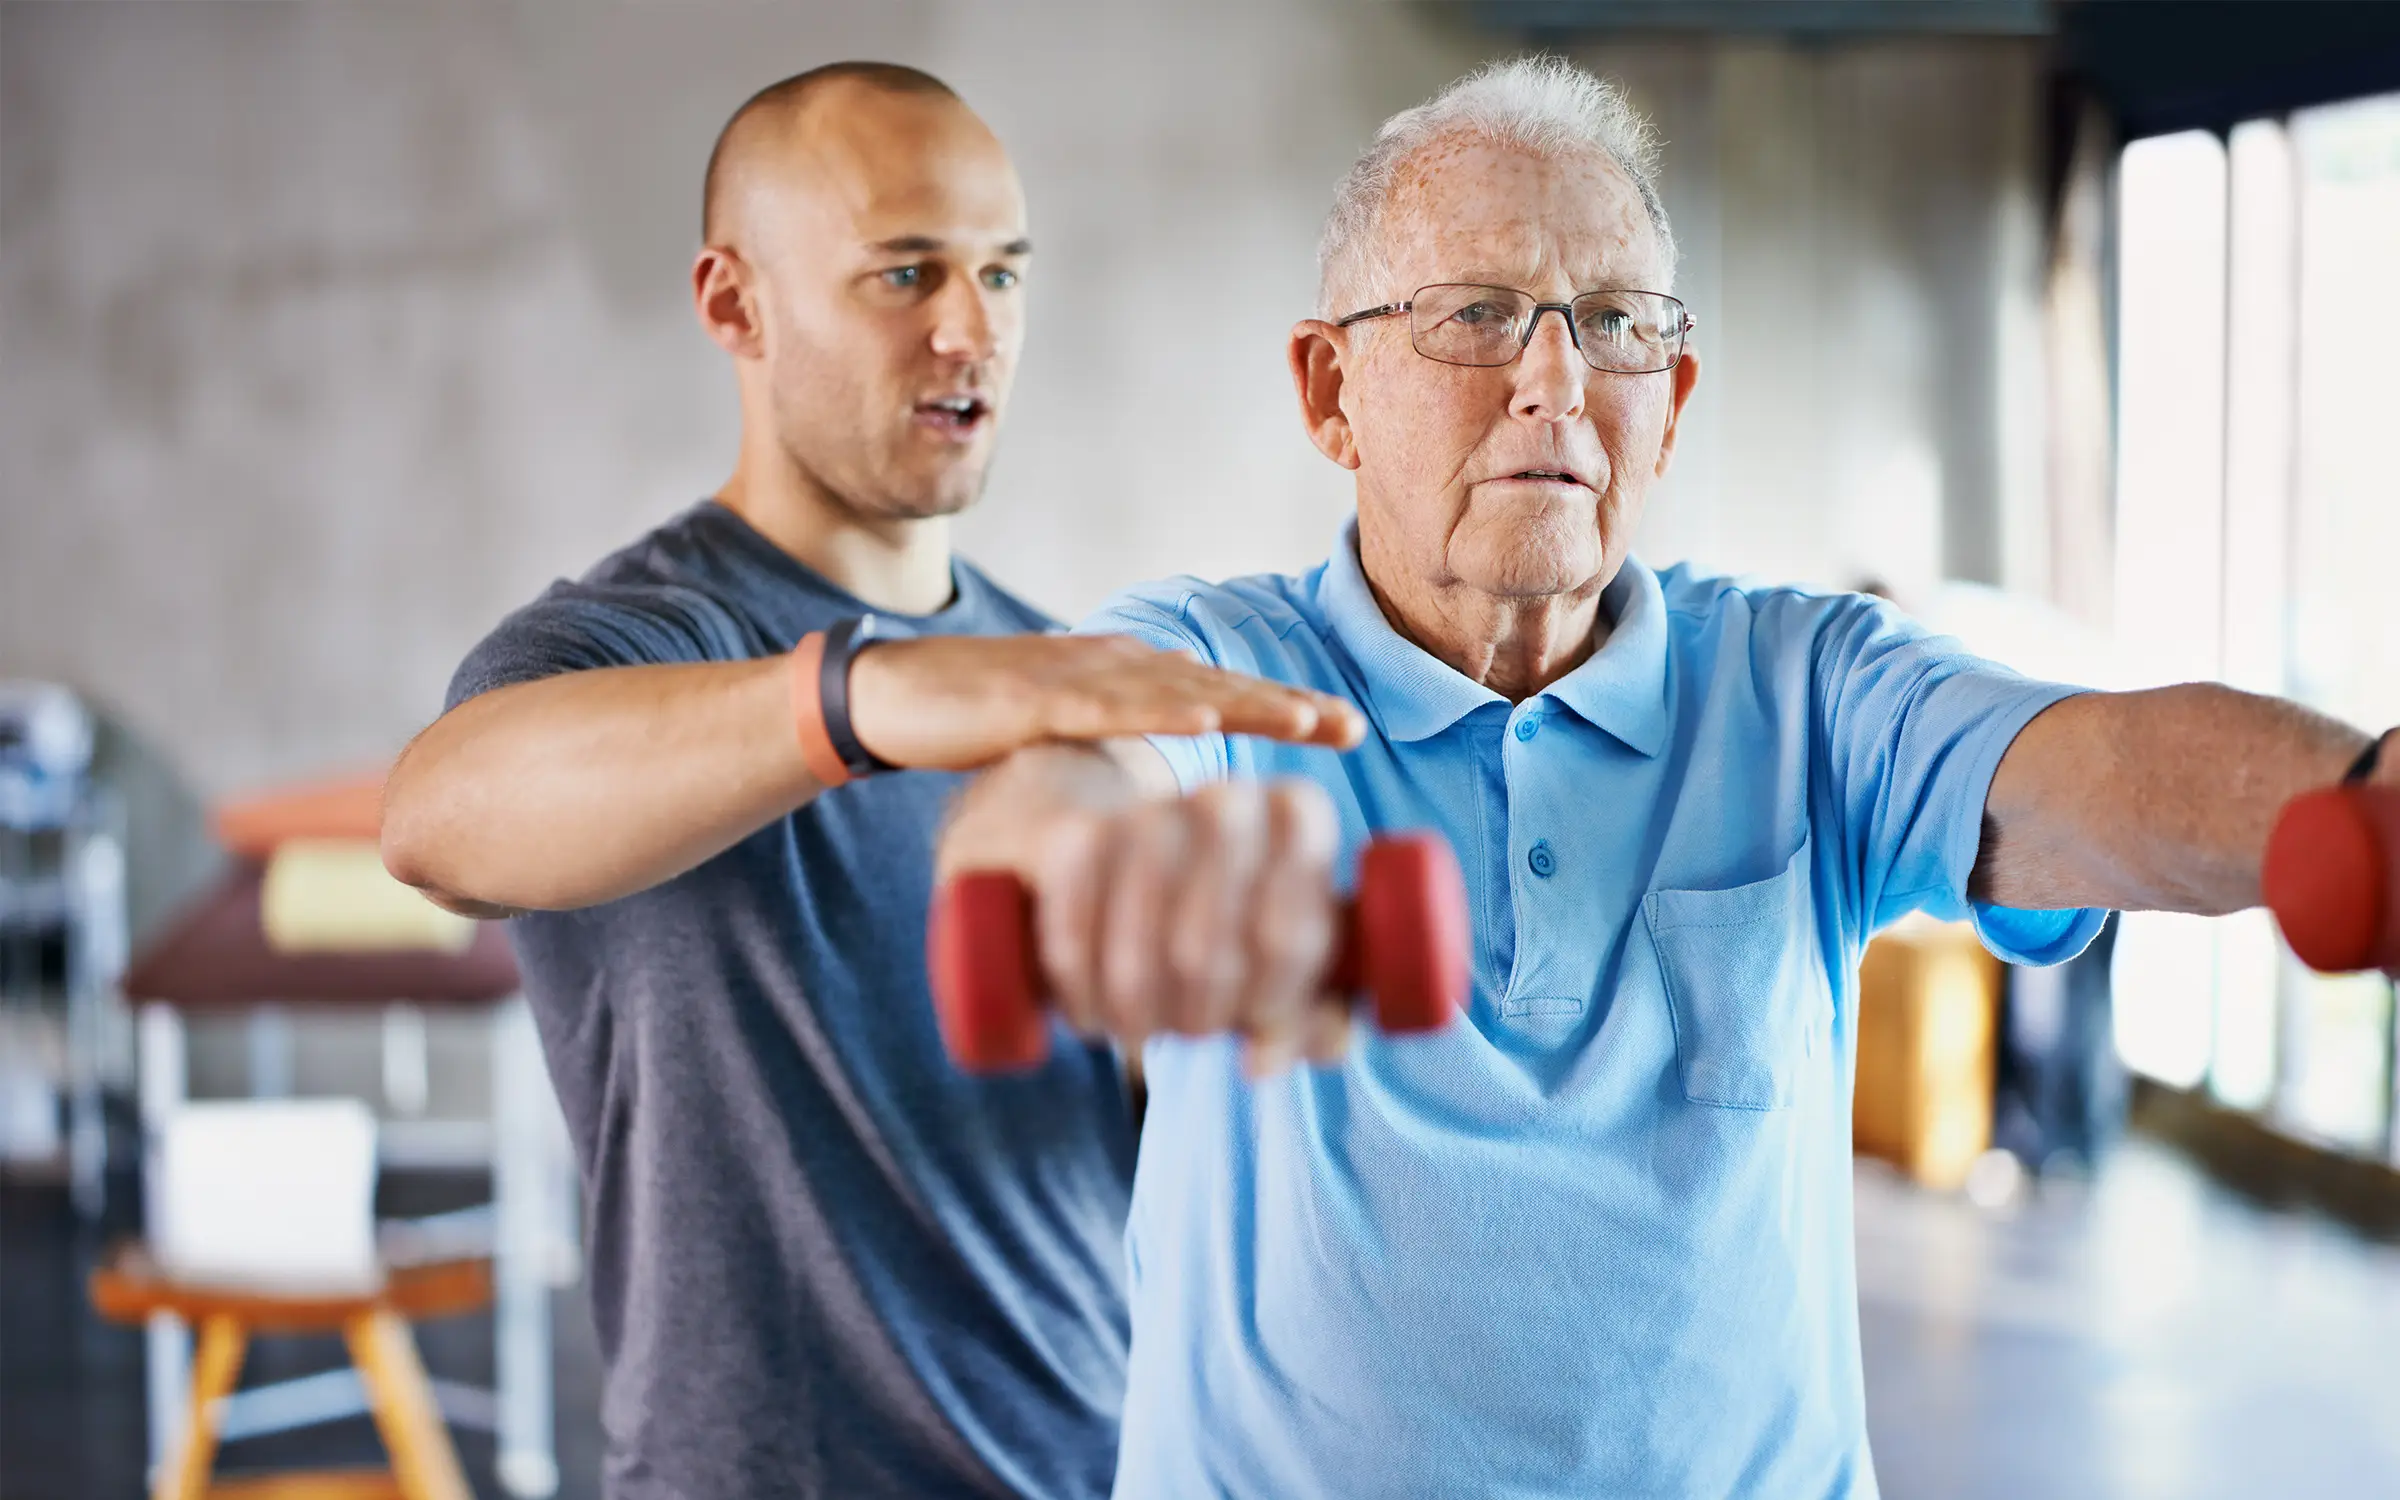 Oefeningen voor ouderen van de fysiotherapeut. 